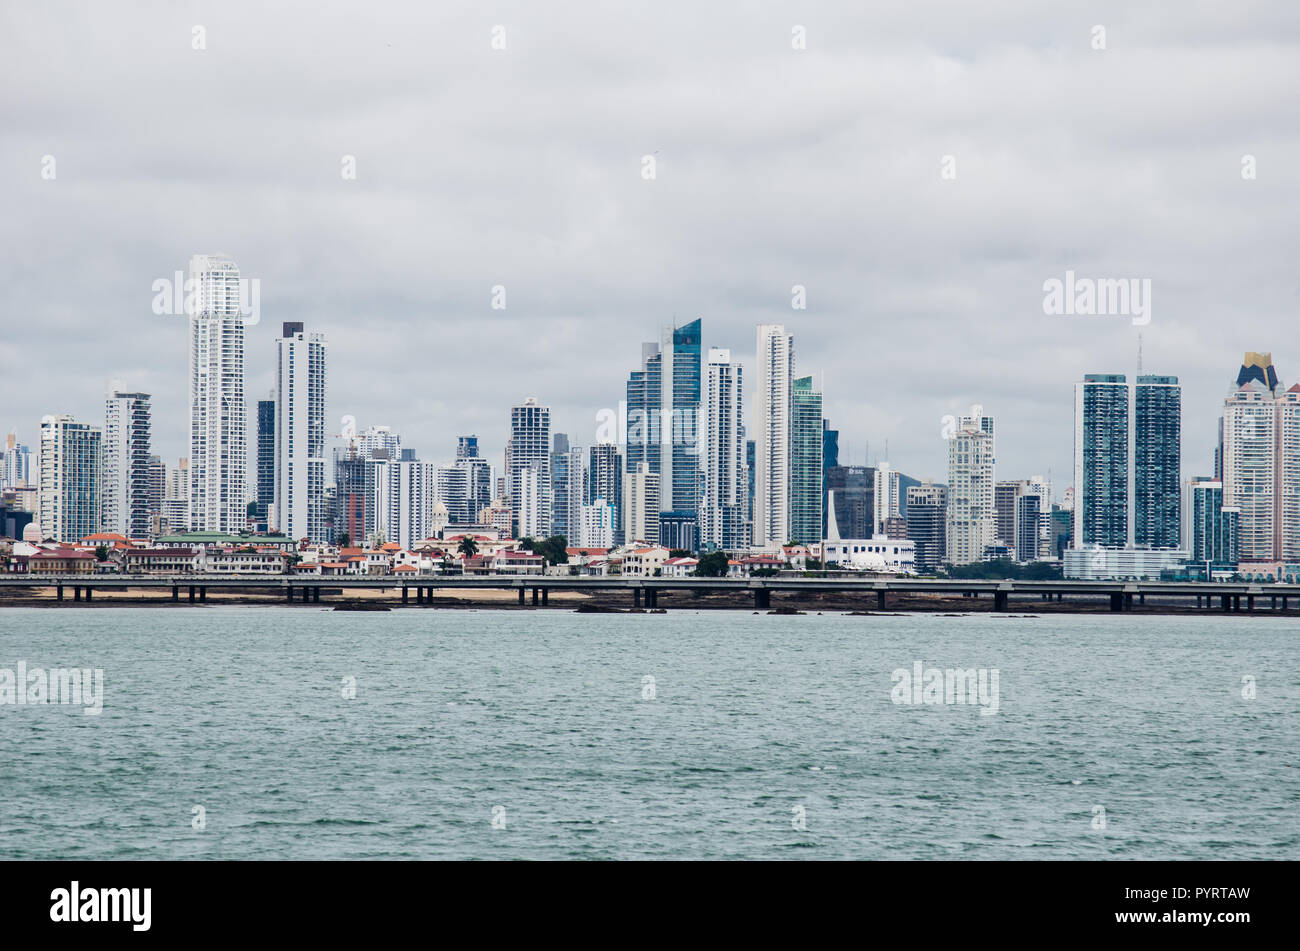 Panama City skyline 2018 Stock Photo